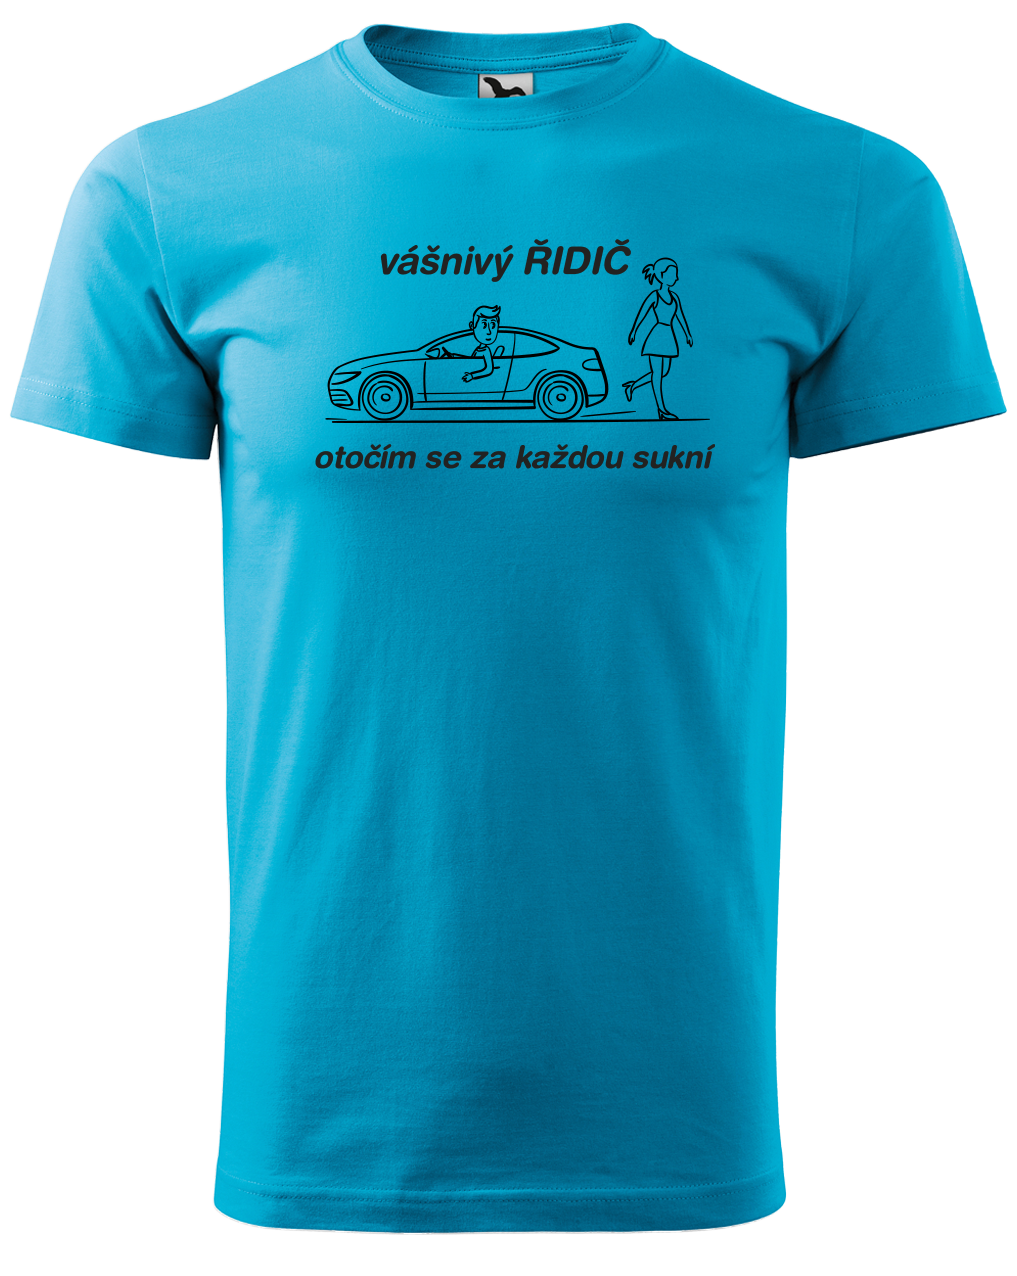 Vtipné tričko pro řidiče - Vášnivý řidič Velikost: XL, Barva: Tyrkysová (44)